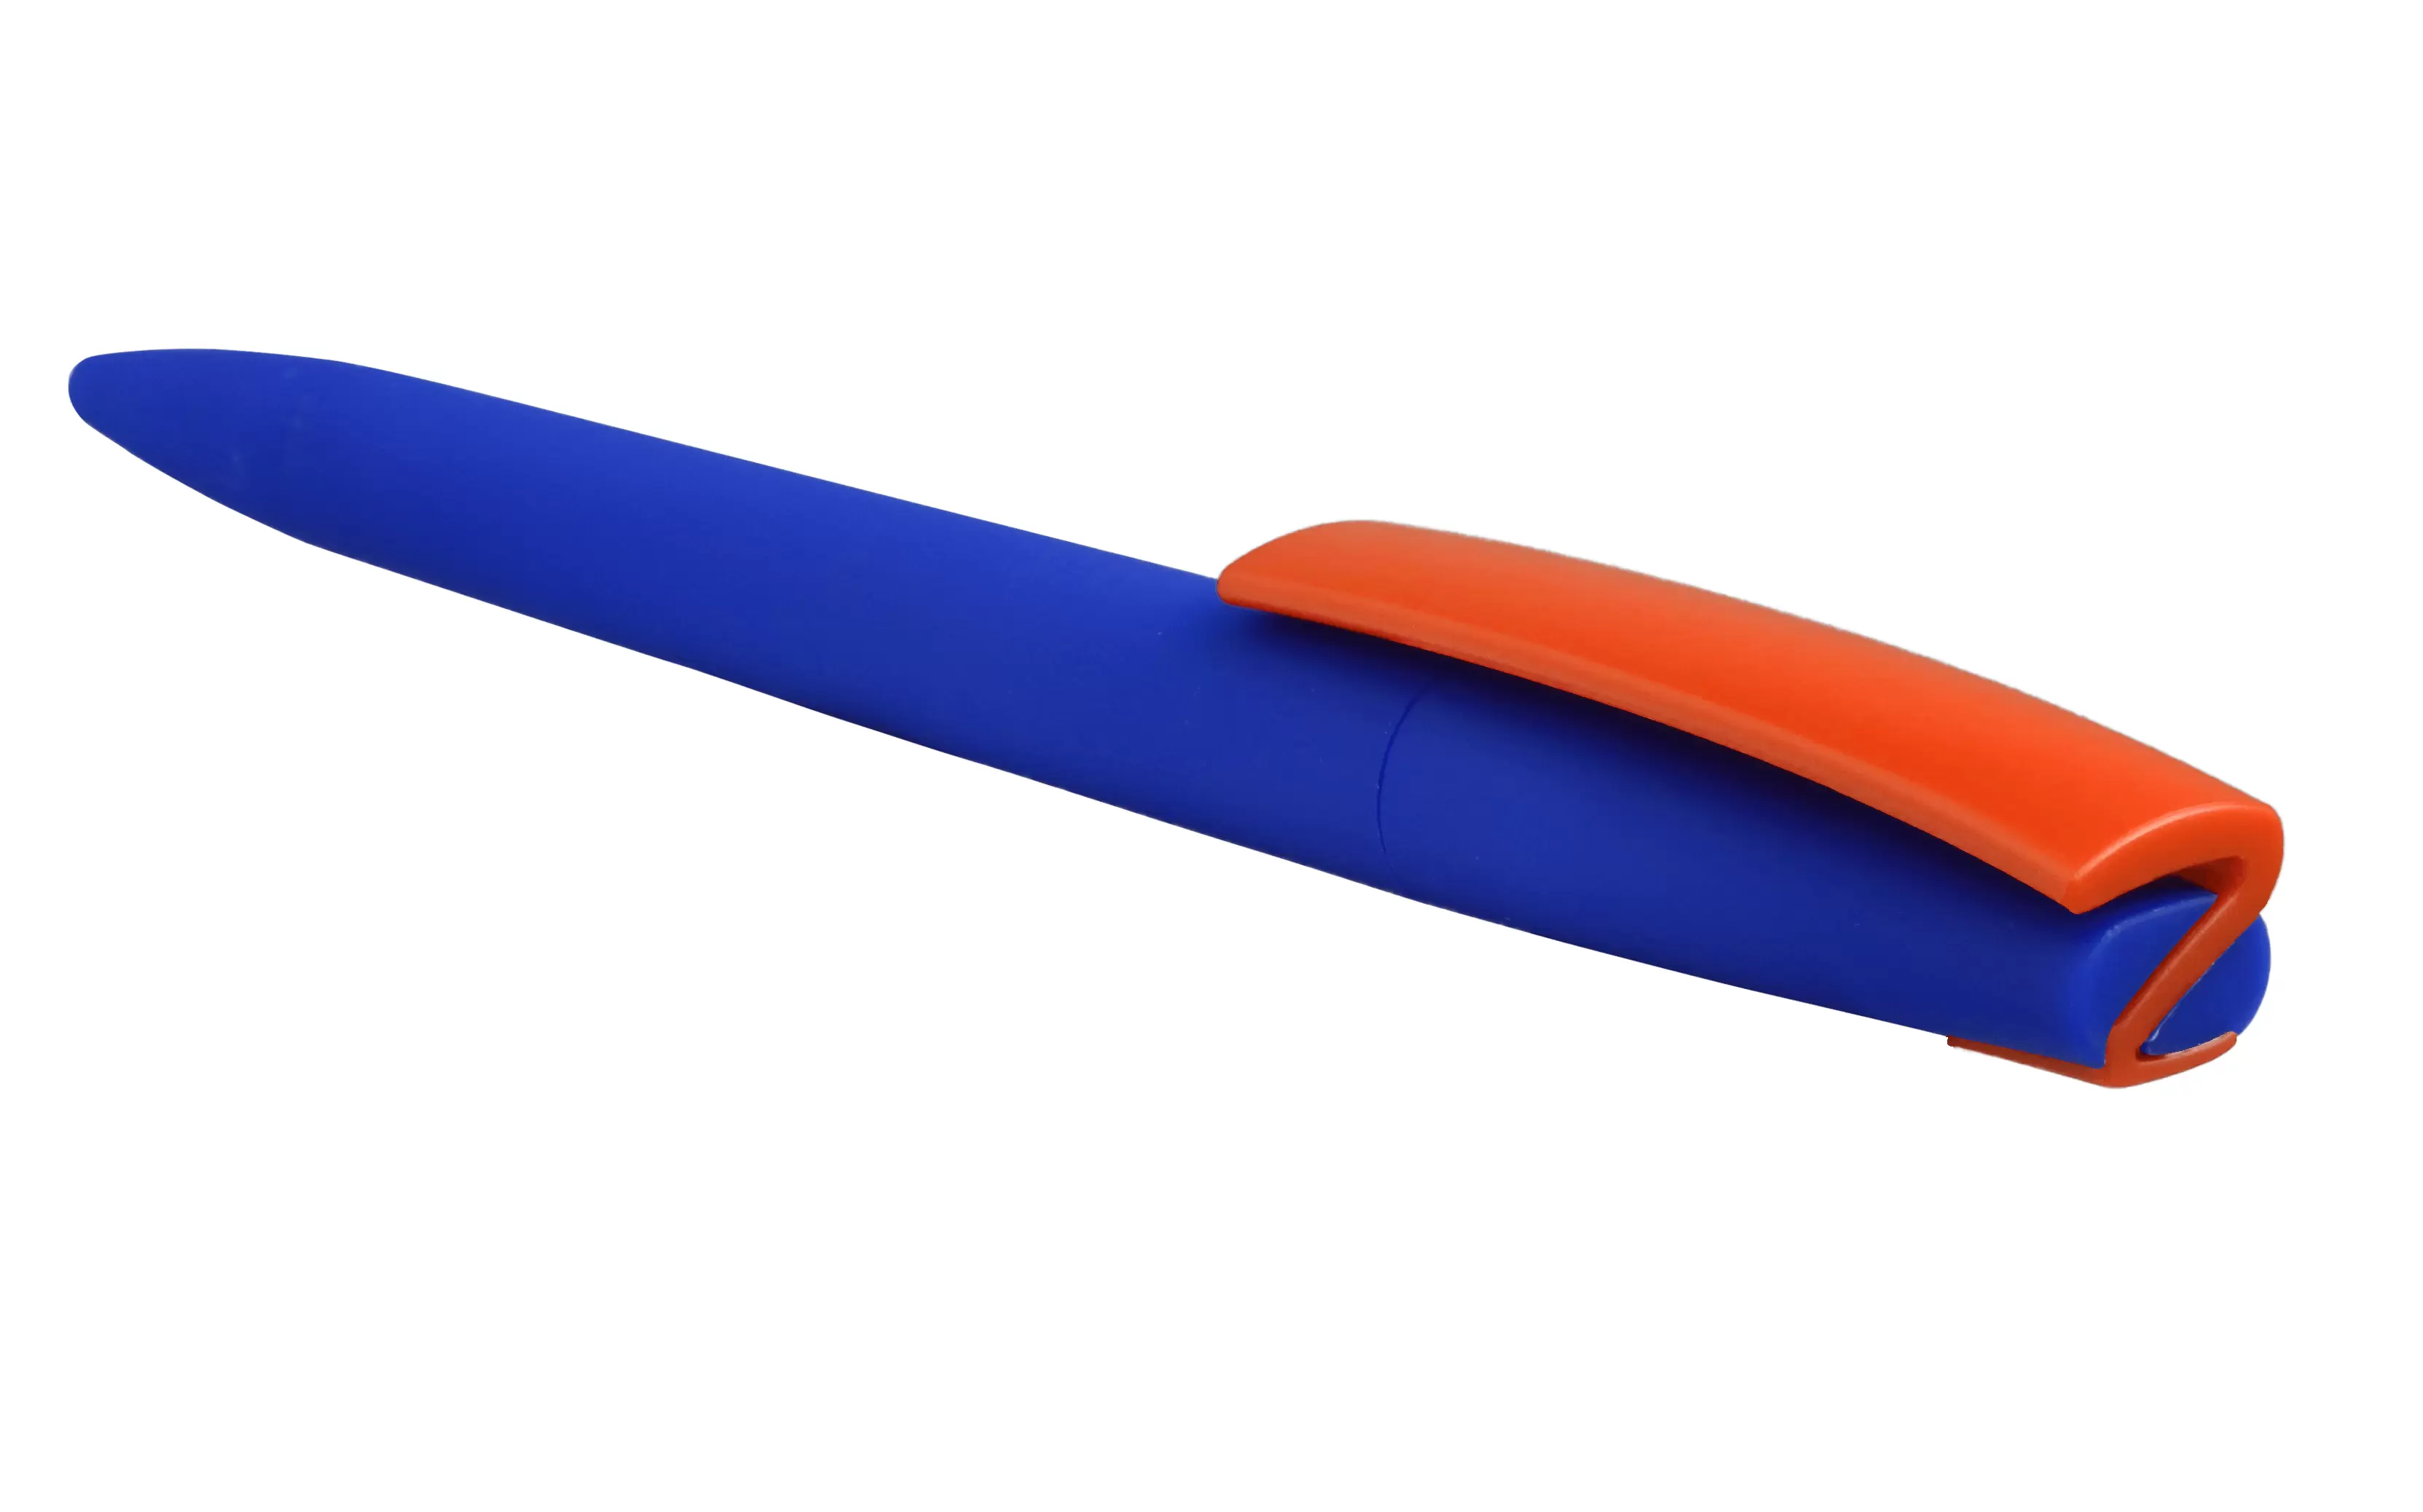 Ручка ZETA SOFT MIX Синяя с оранжевым 1024.01.05